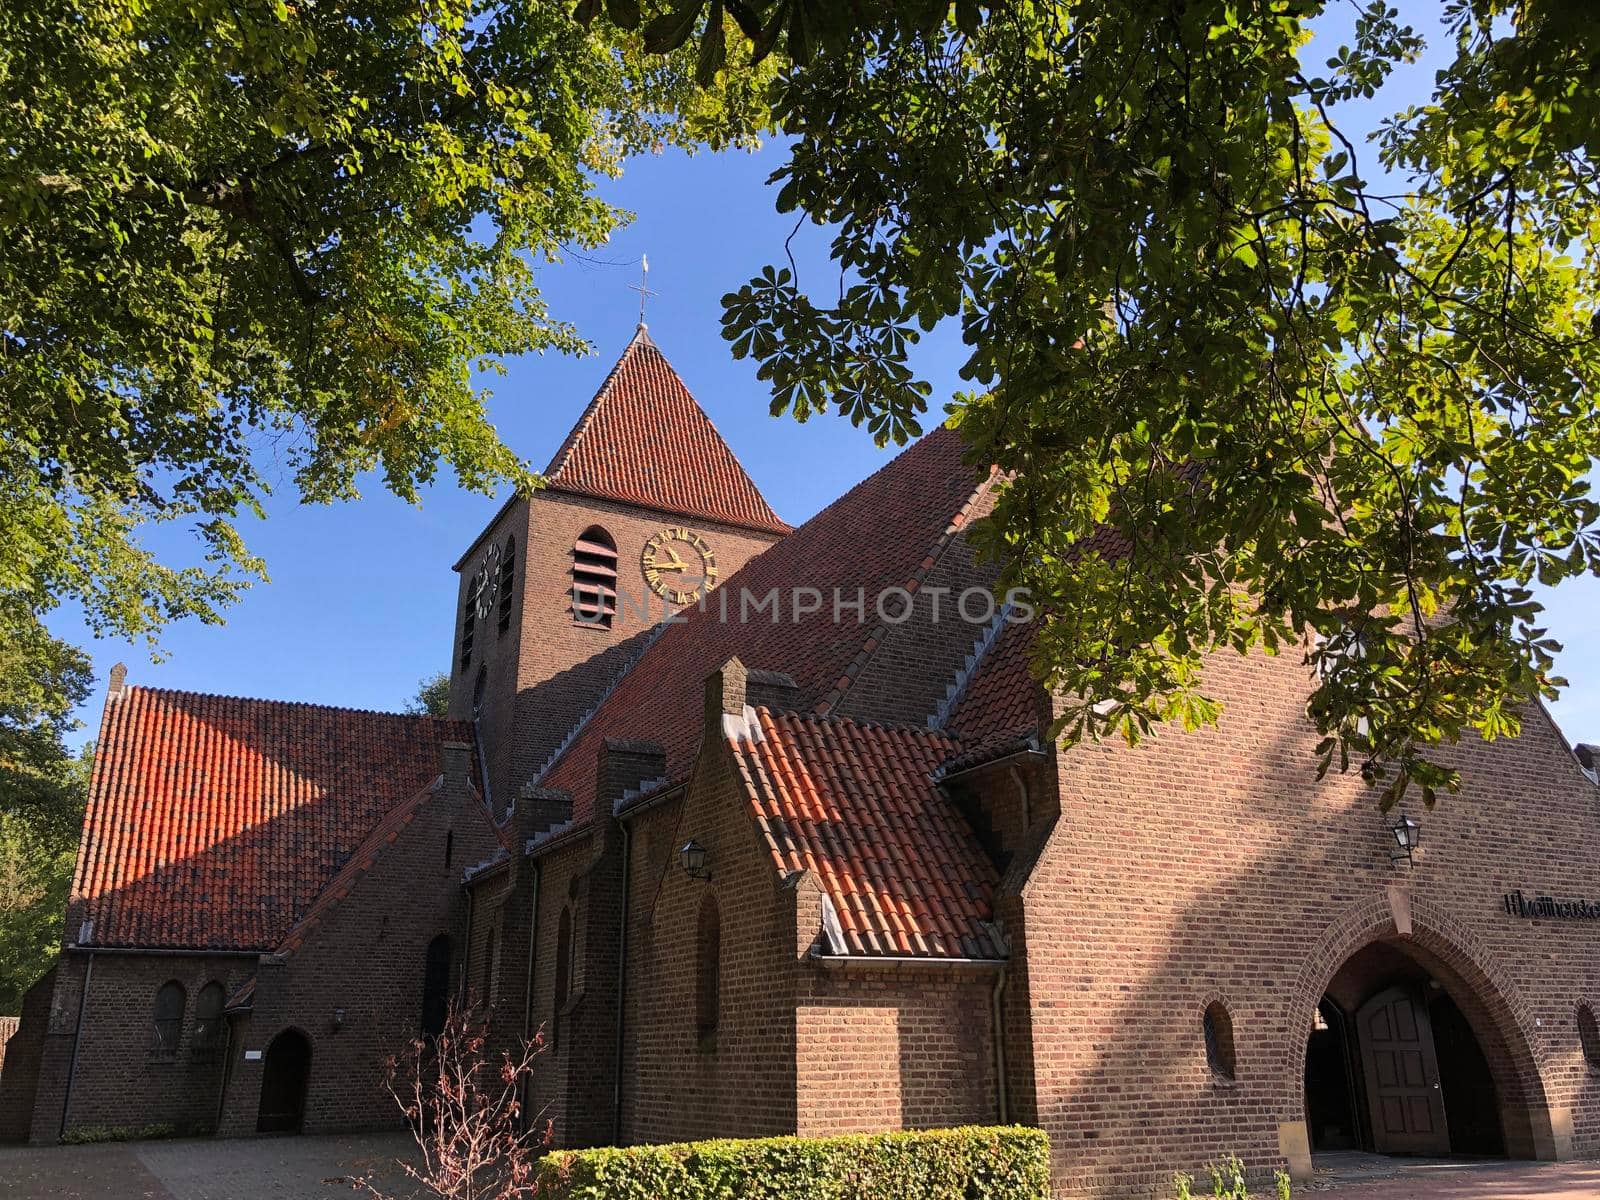 St. Matthew's Church in Eibergen by traveltelly